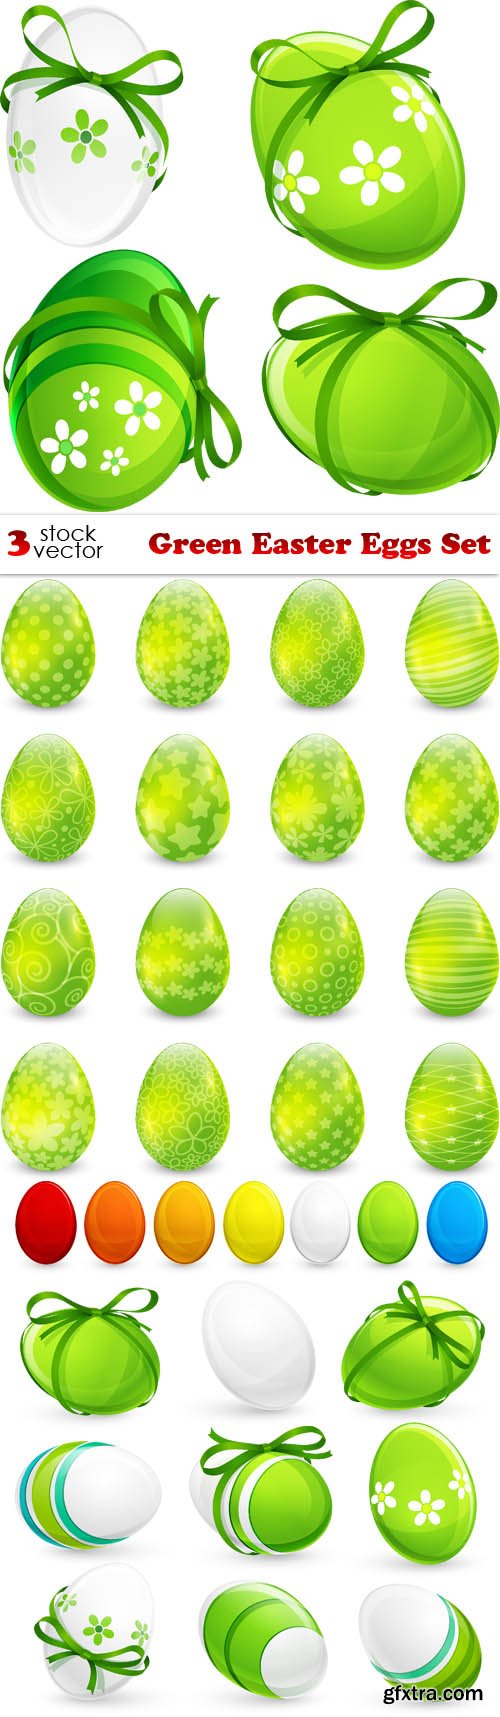 Vectors - Green Easter Eggs Set